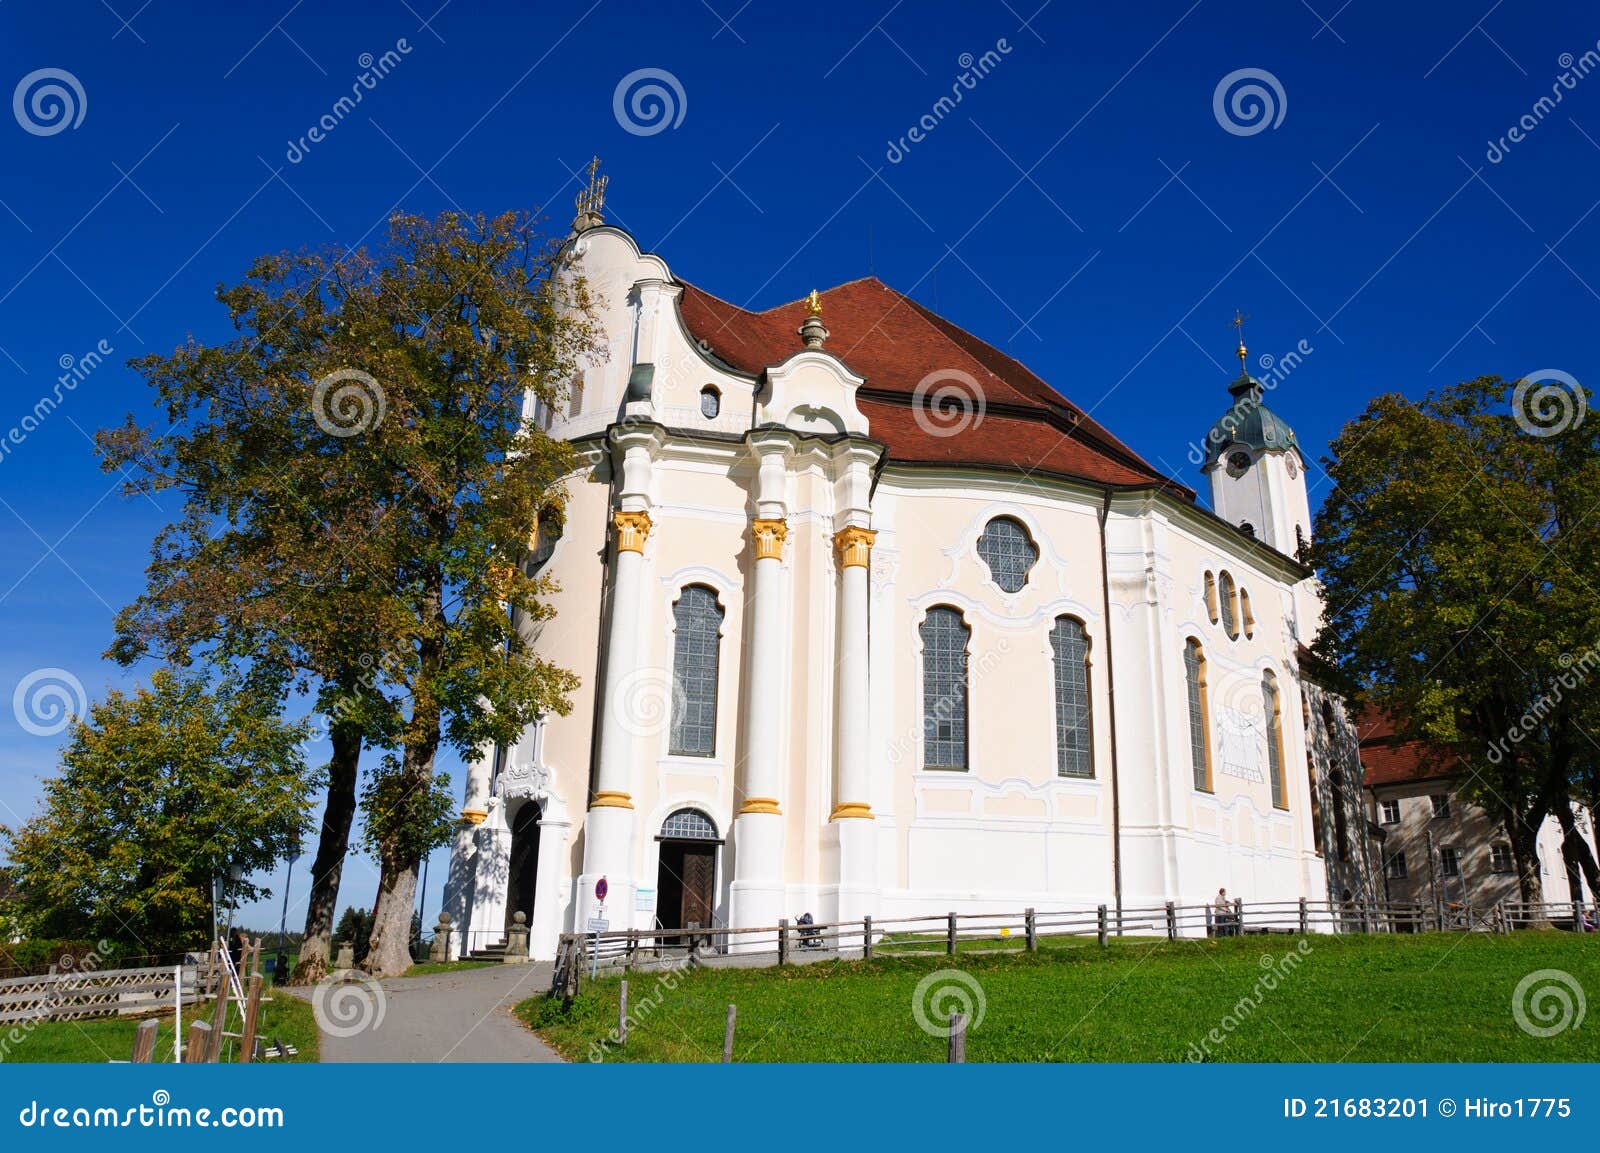 pilgrimage church of wies